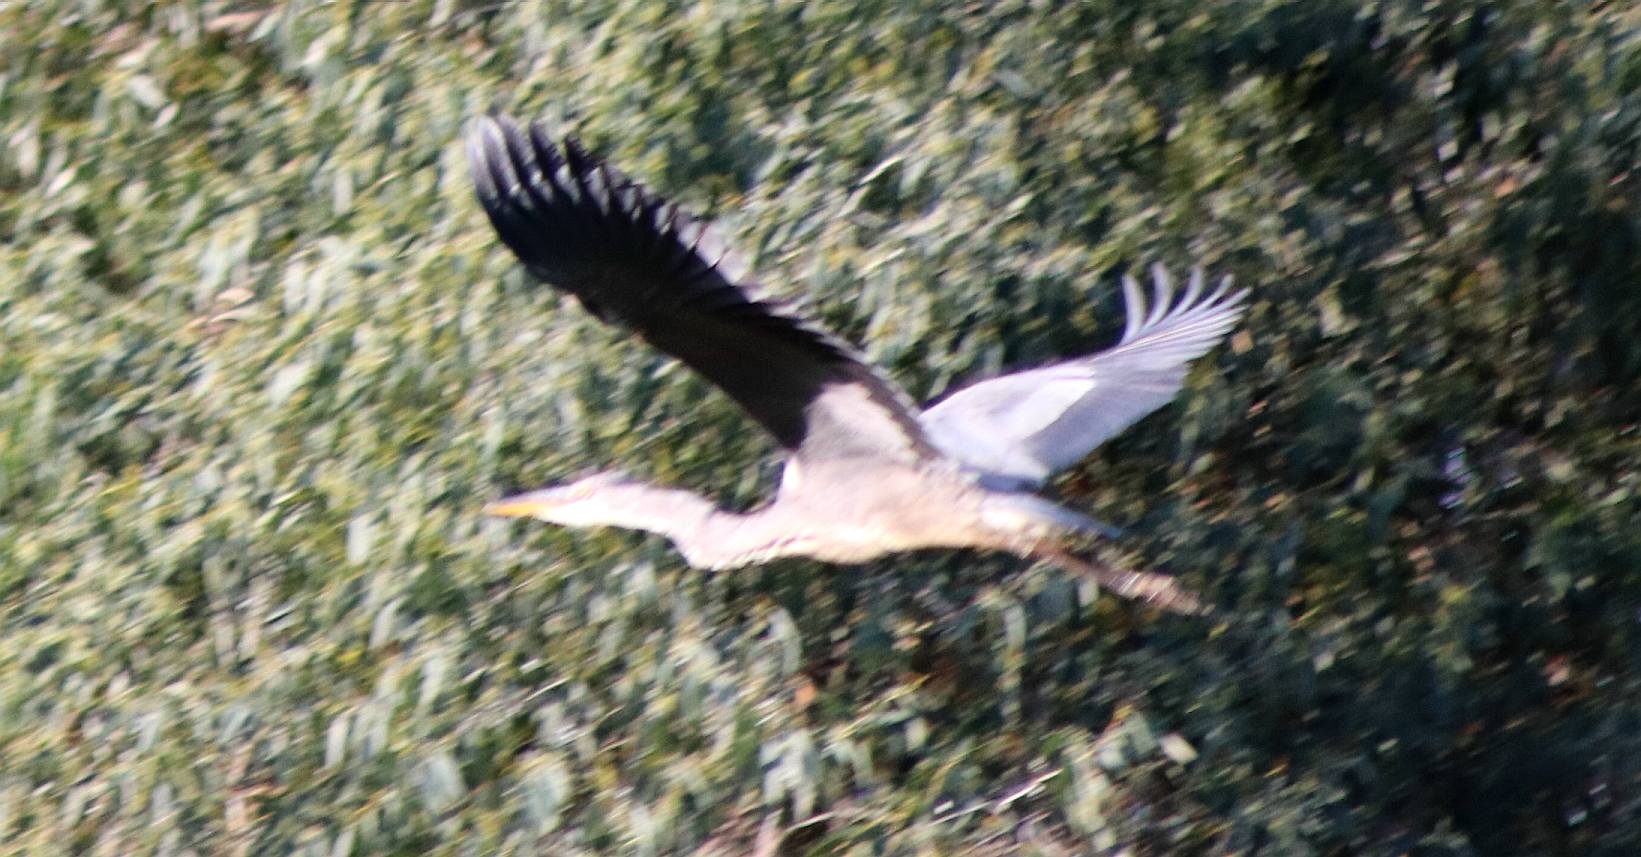 Heron in flight over Lime Park, Herstmonceux